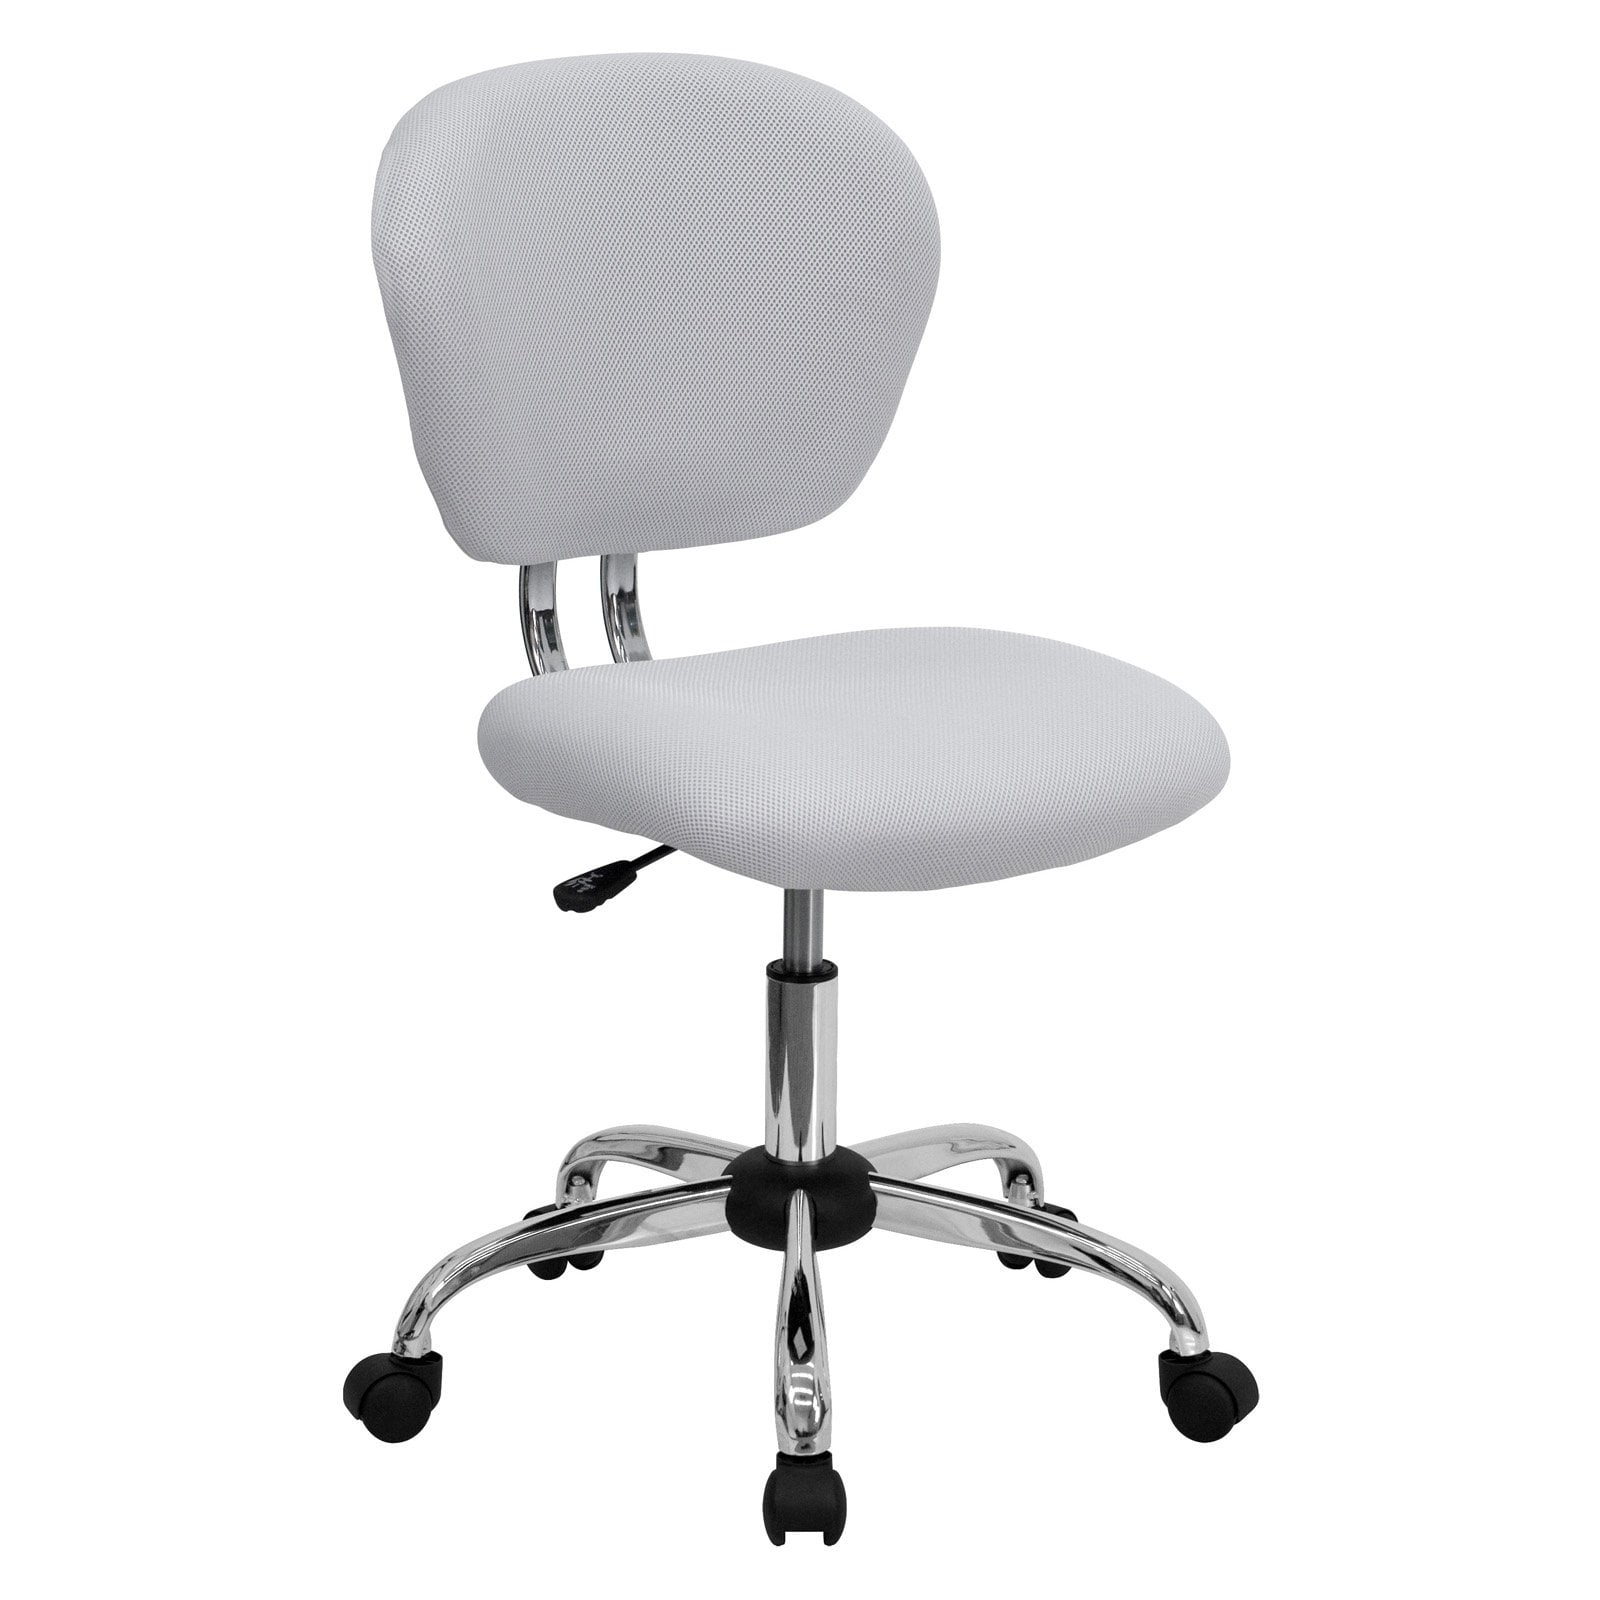 Office Desk Chair White Mesh Upholstered Chrome Base Wheels